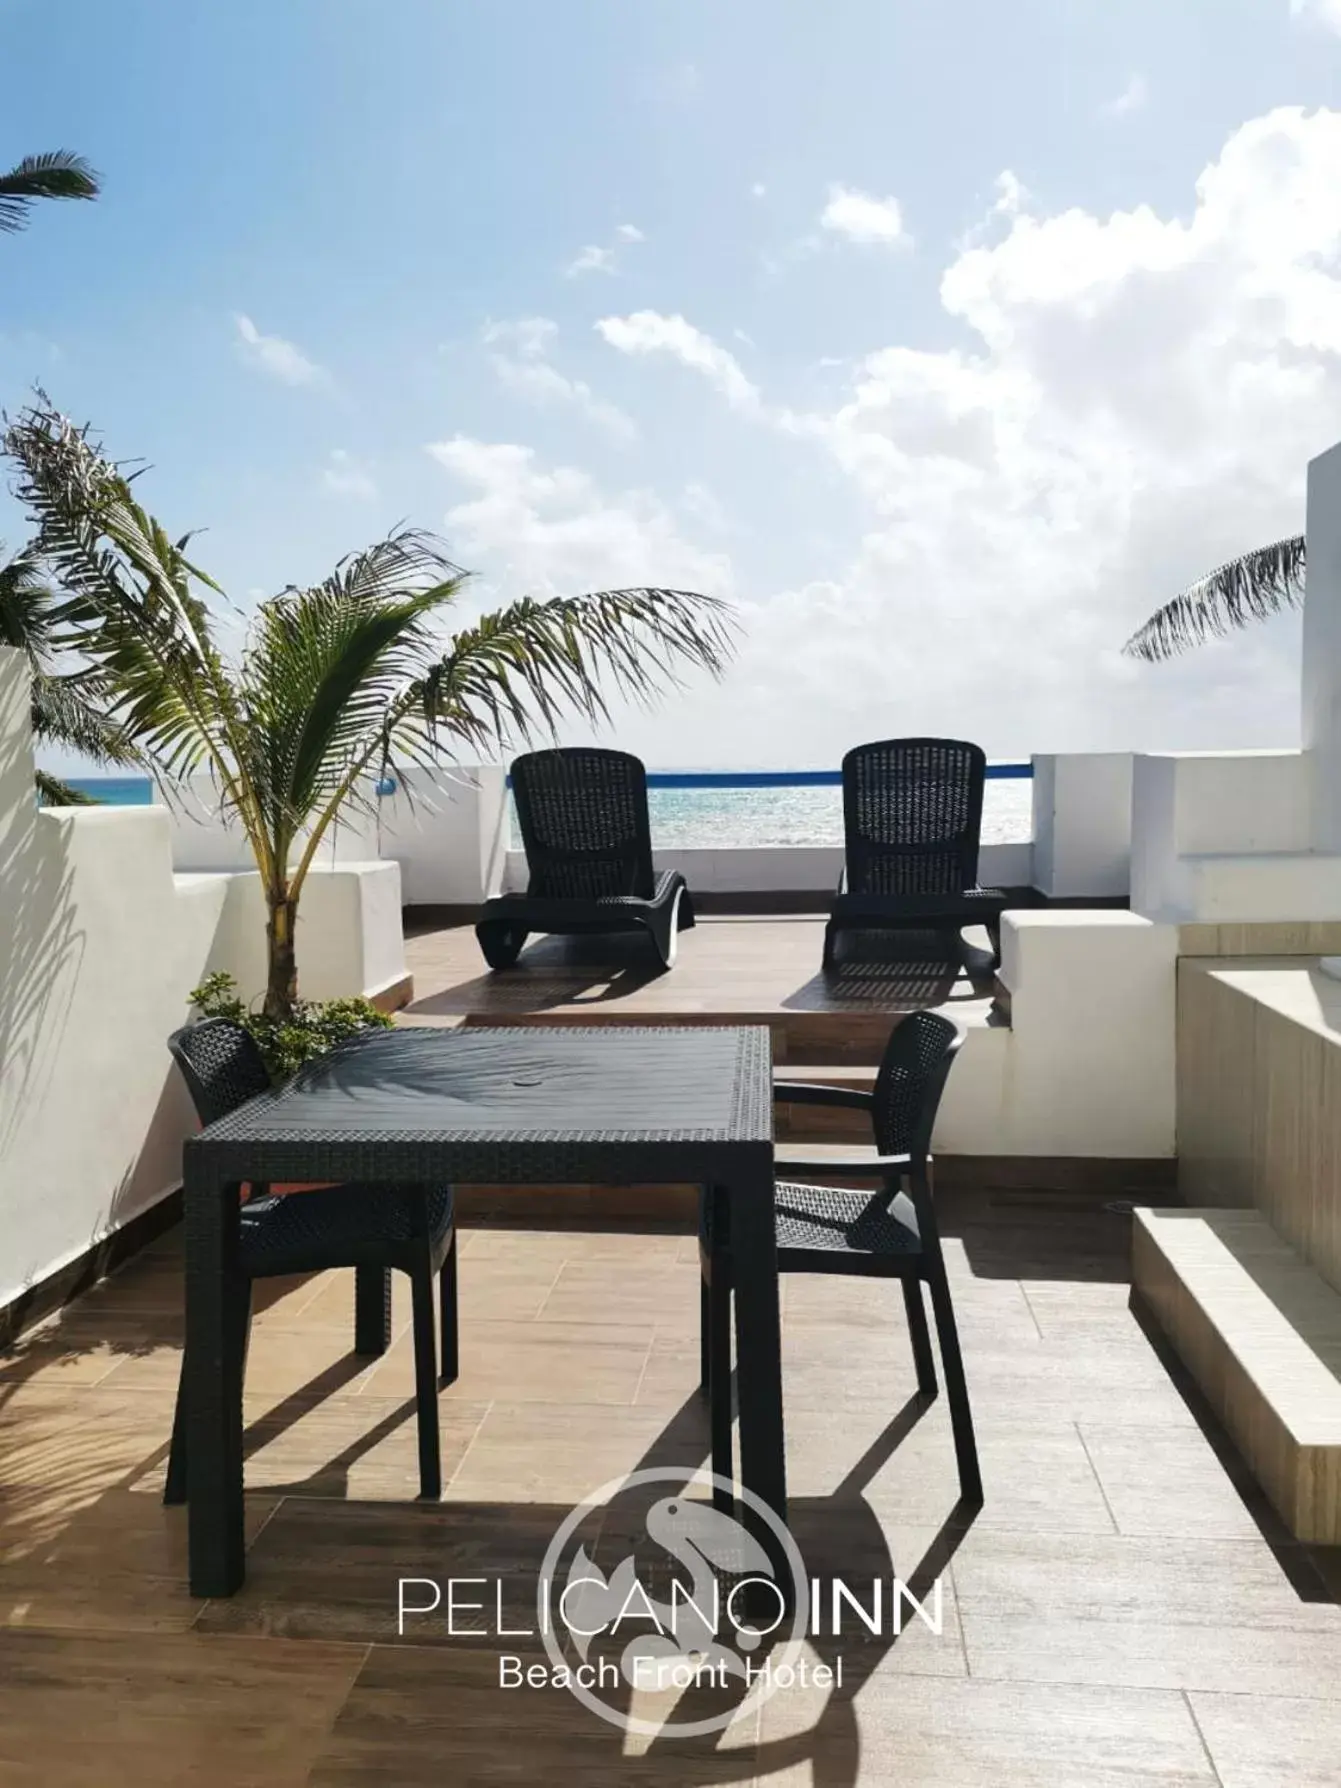 Balcony/Terrace in Pelicano Inn Playa del Carmen - Beachfront Hotel